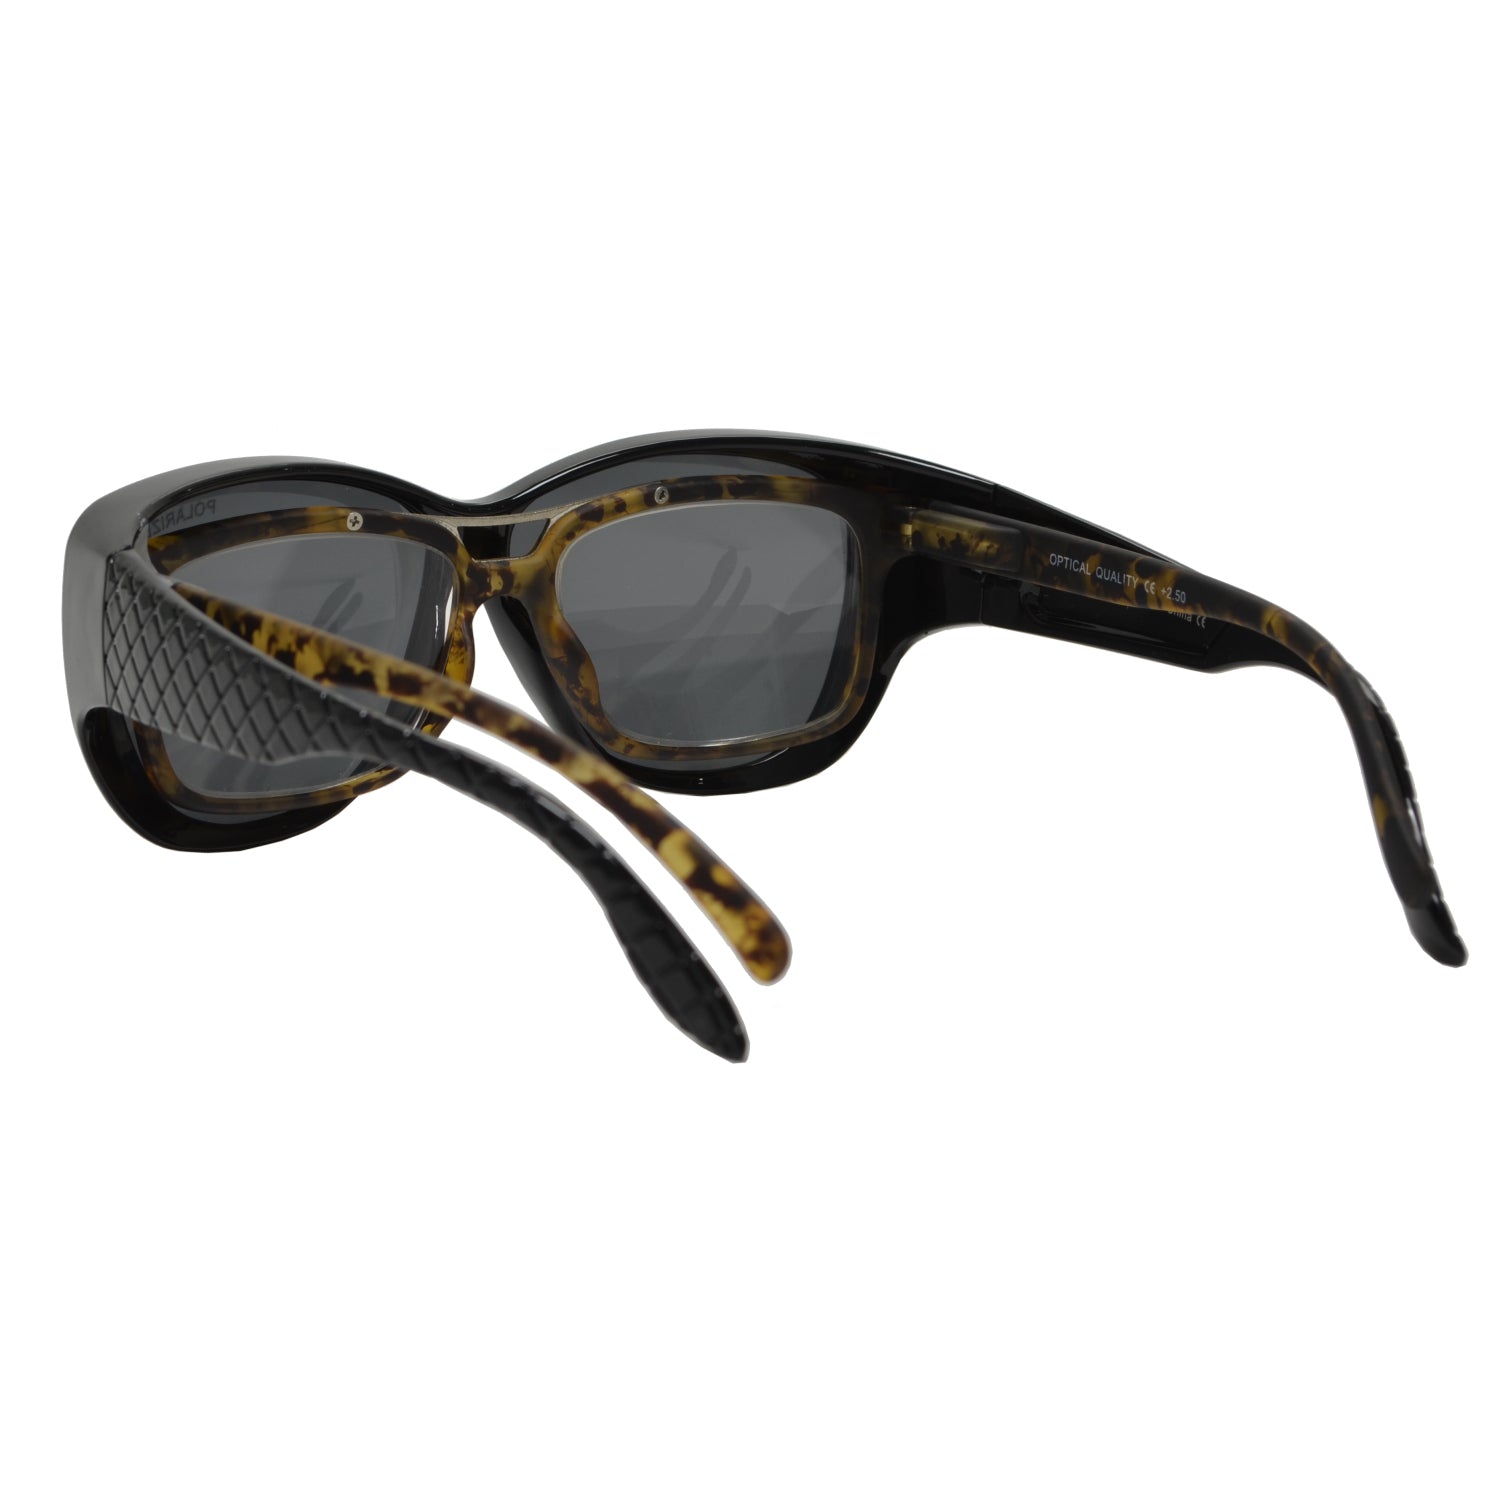 Oversize Fit over Sunglasses for Women Men, Sunglasses Fit over Glasses,  Solar S | eBay